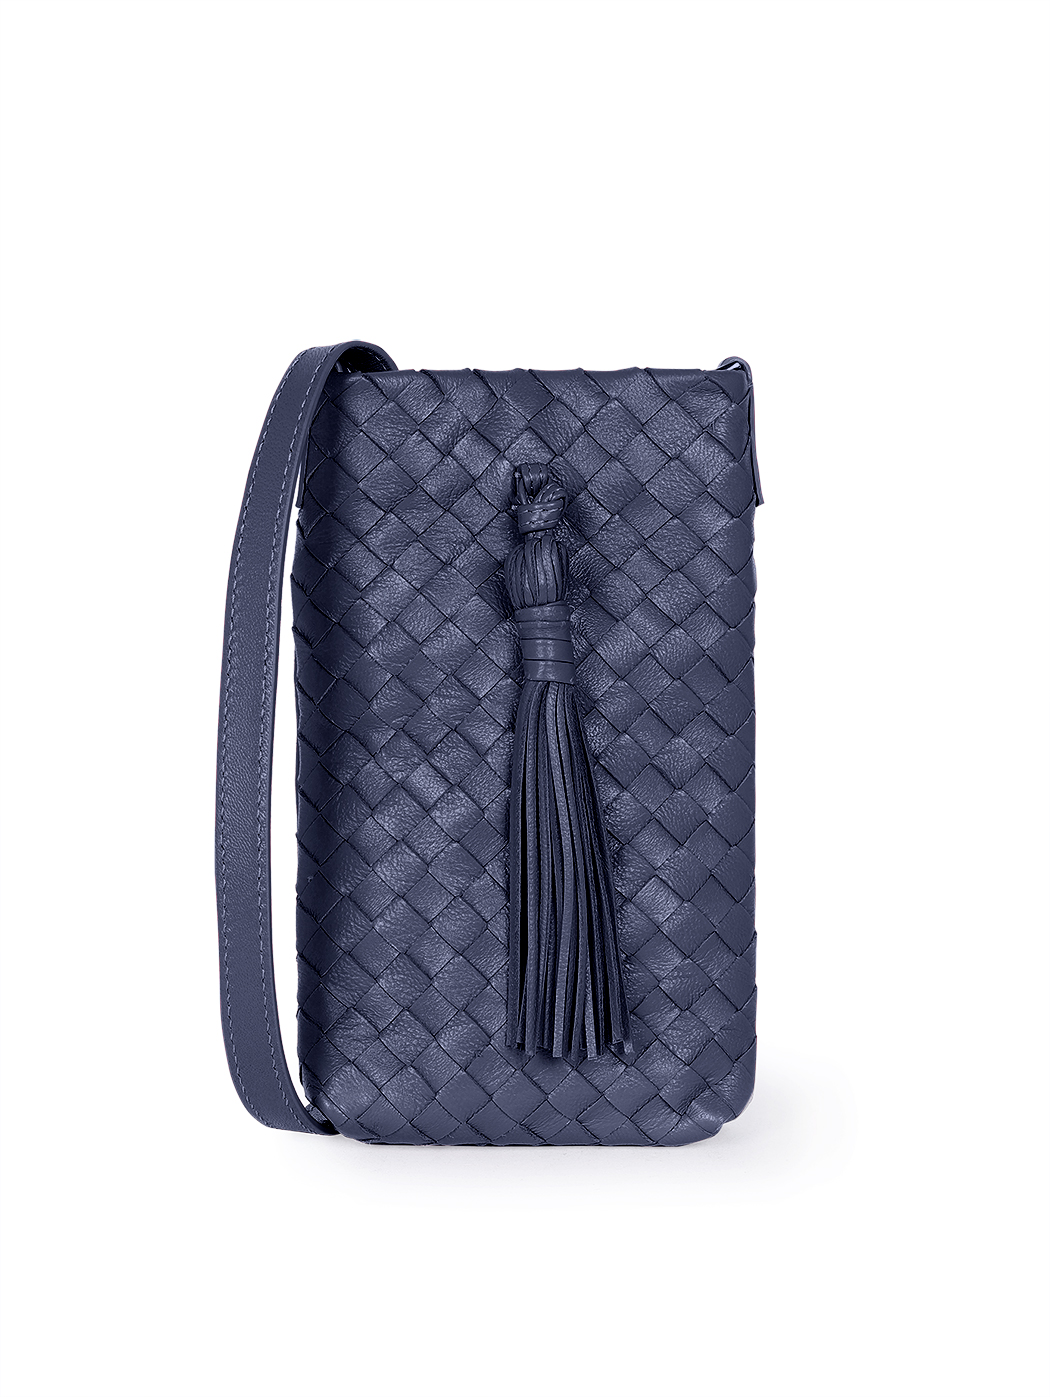 Плетеная сумочка кросс – боди для телефона коллекции Intrecci синего цвета